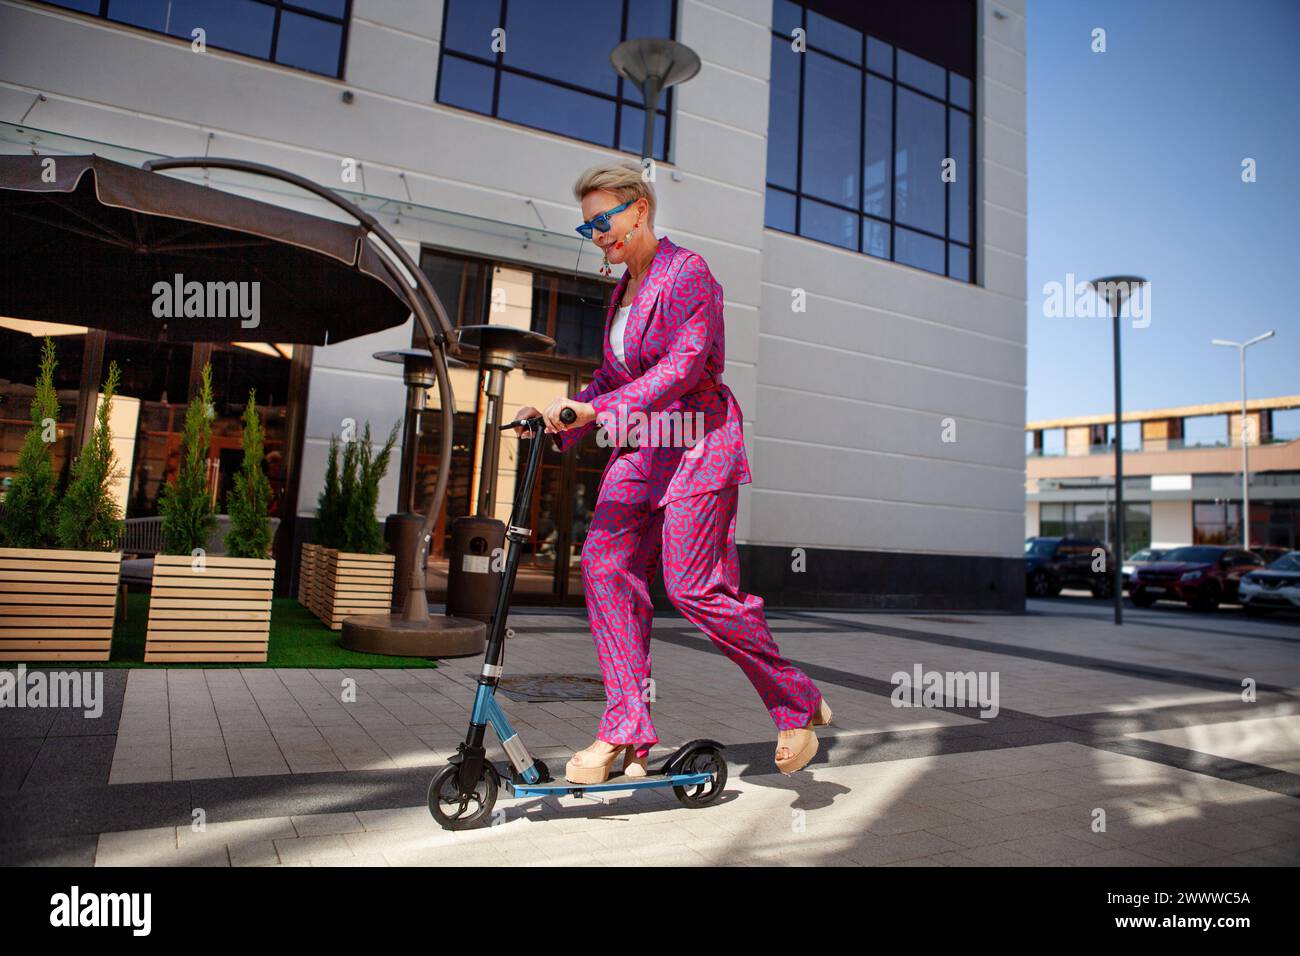 Élégamment habillée femme mature dans un pantalon rose vif et une veste roule autour de la ville sur un scooter, un frien actif, sain et éco Banque D'Images